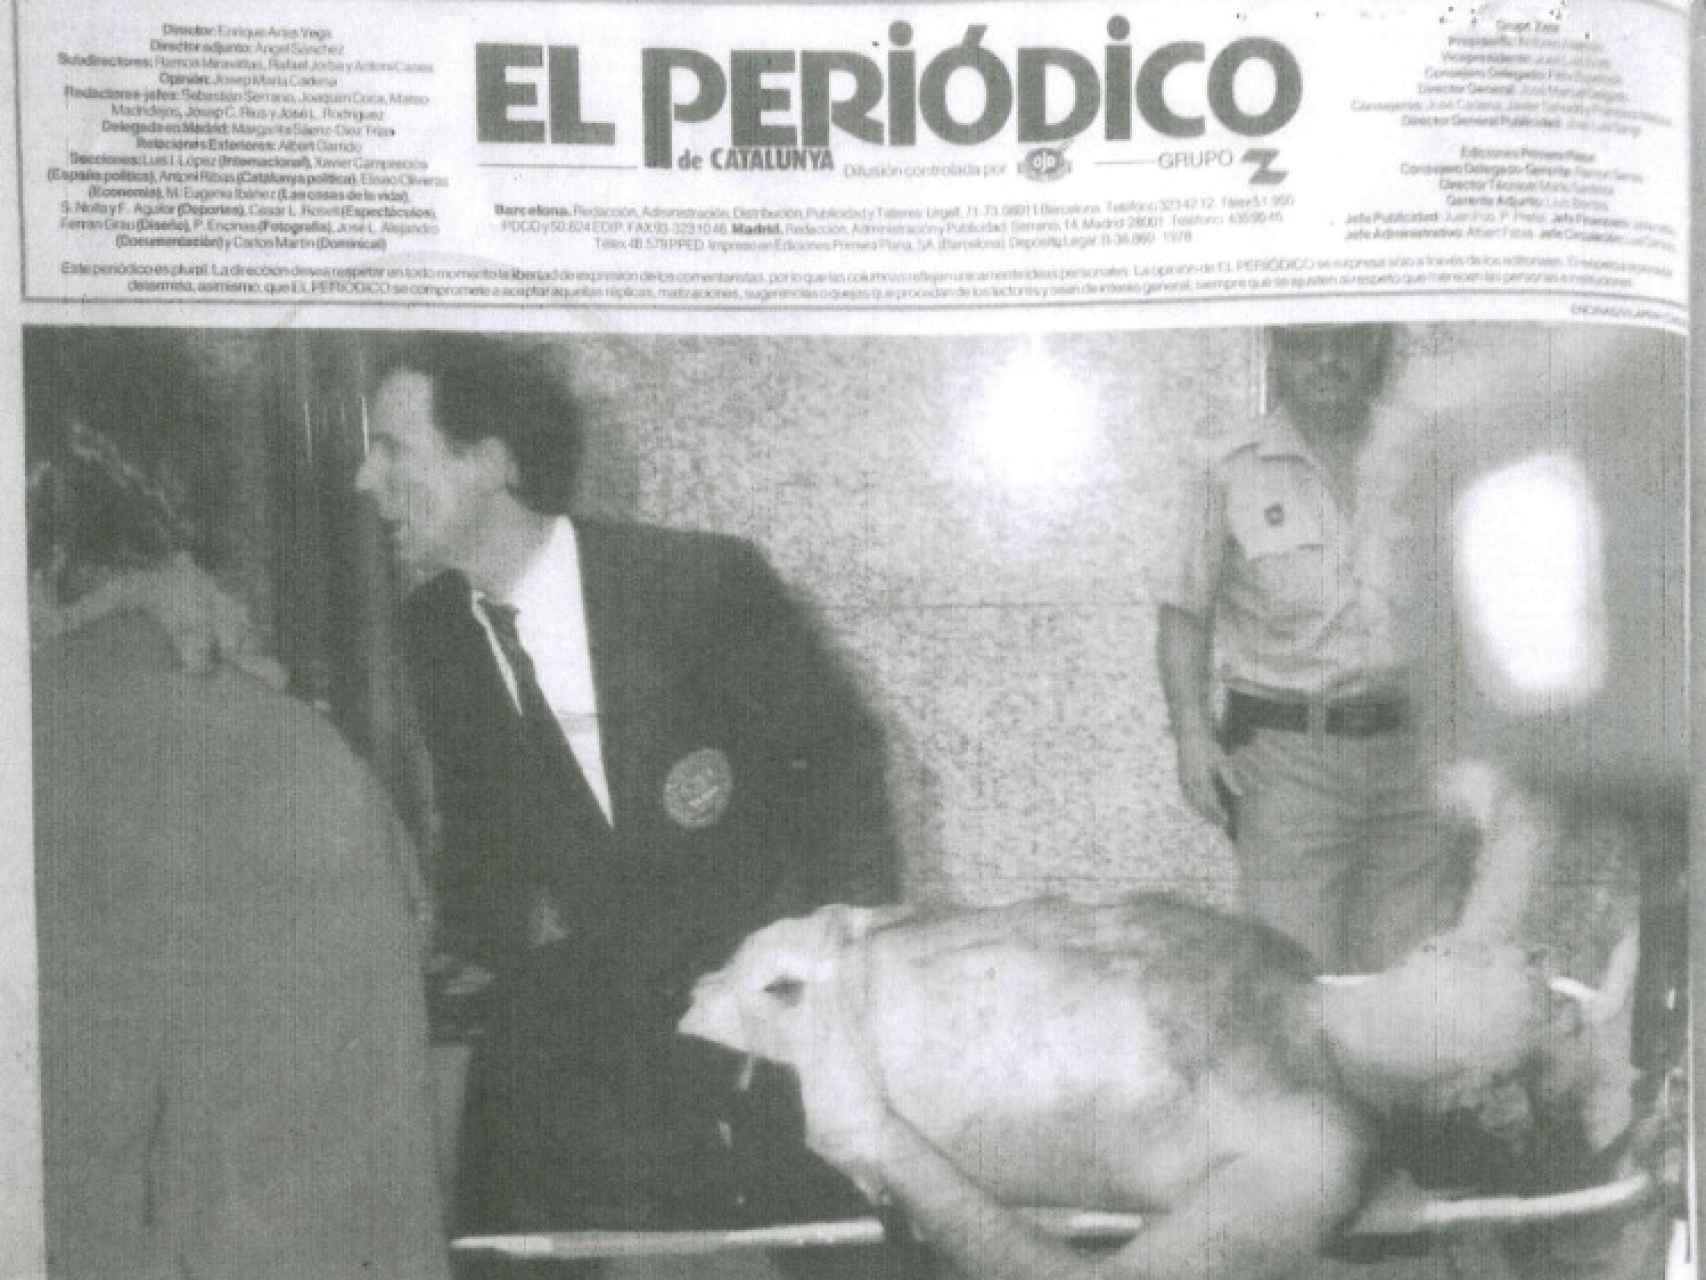 Contraportada de El Periódico de Catalunya; en traje y al fondo, Pedro Ortega.